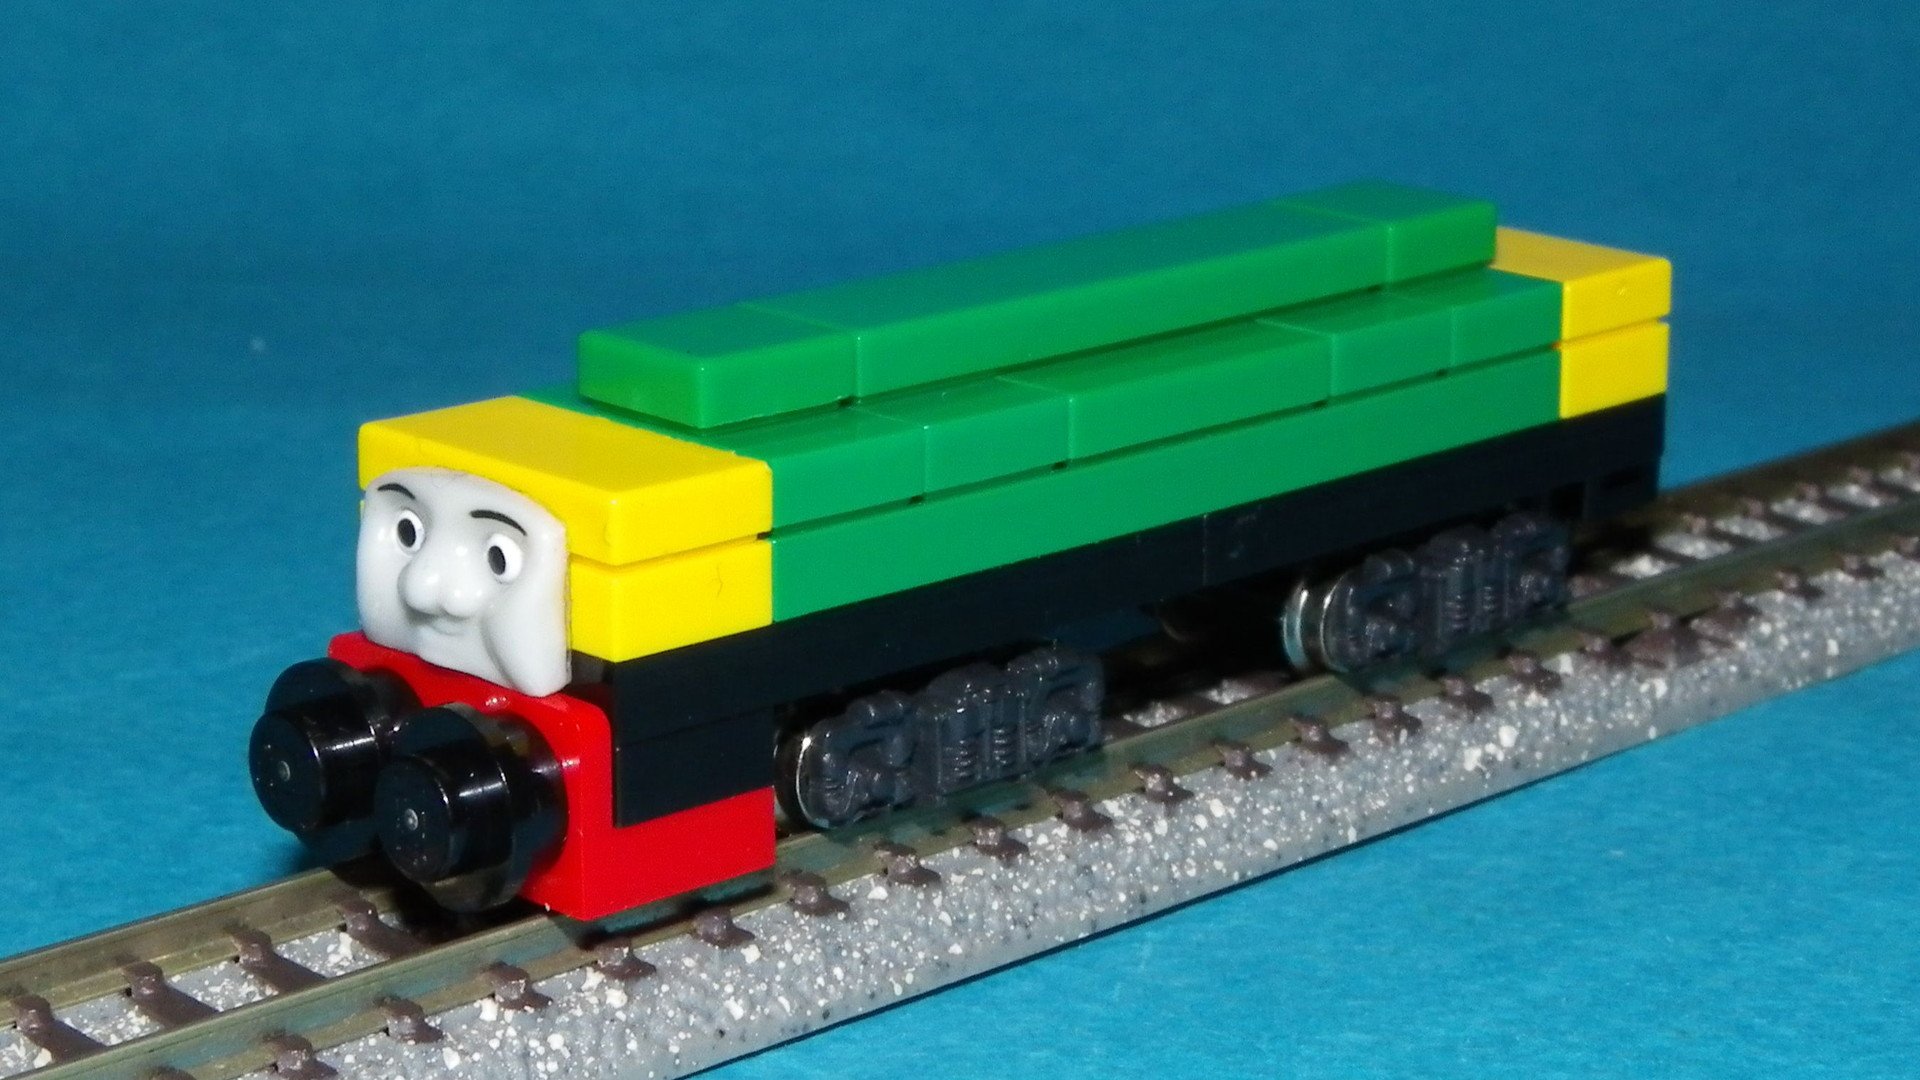 Small Thomas World Thomas Friends N Gauge Lego Train Brake Tender きかんしゃトーマス ｎゲージ レゴトレイン ブレーキテンダー 機関車の制動力不足を補うための車両です 機関車と連動するブレーキを備えており中には鉄クズが詰め込まれています